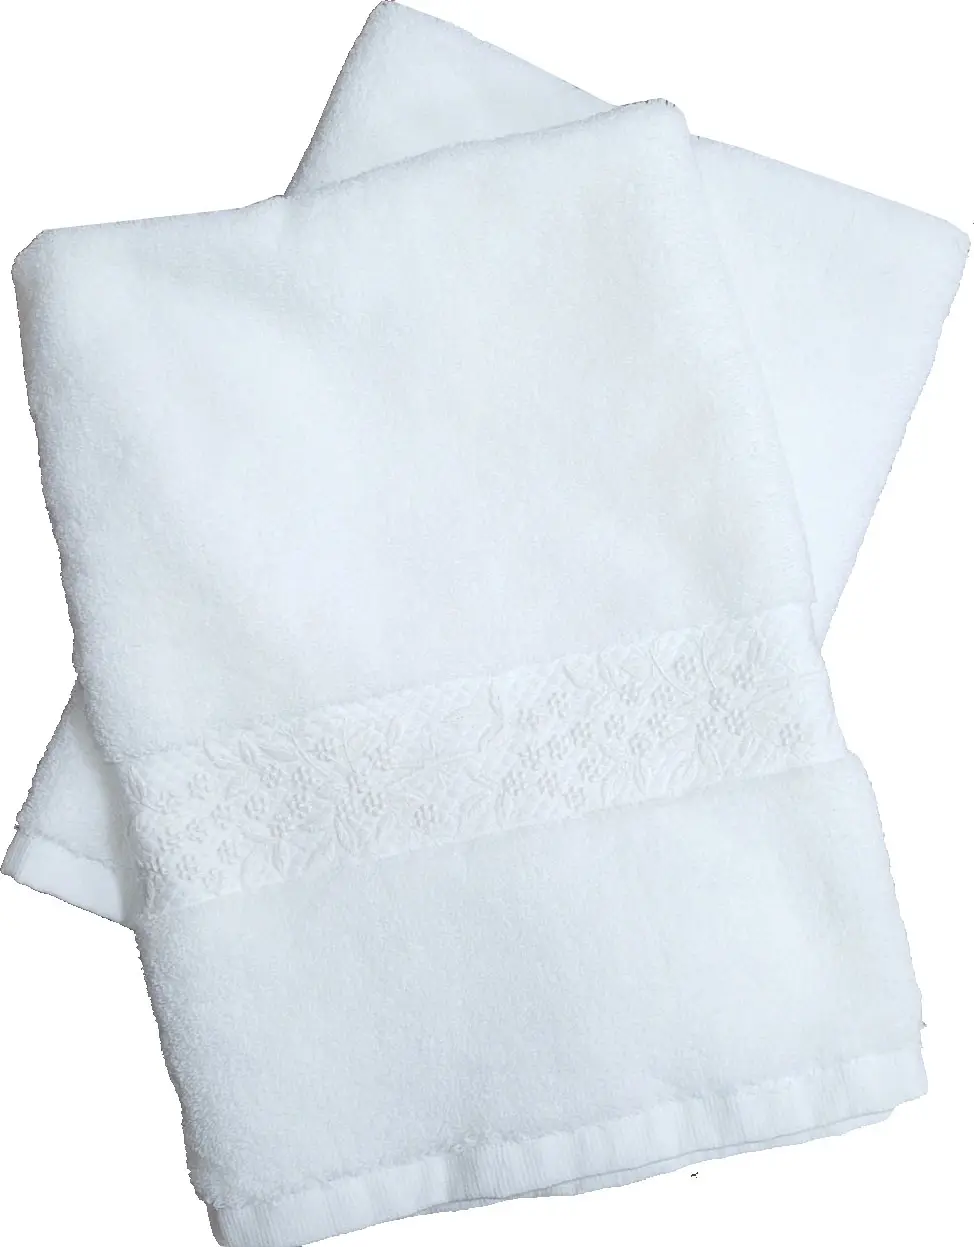 ชุดผ้าขนหนูผ้าขนหนูคอตตอนสำหรับปักลายดอกไม้สีขาวผ้าเทอร์รี่ผ้าฝ้ายเนื้อนุ่มงานปักตามสั่ง